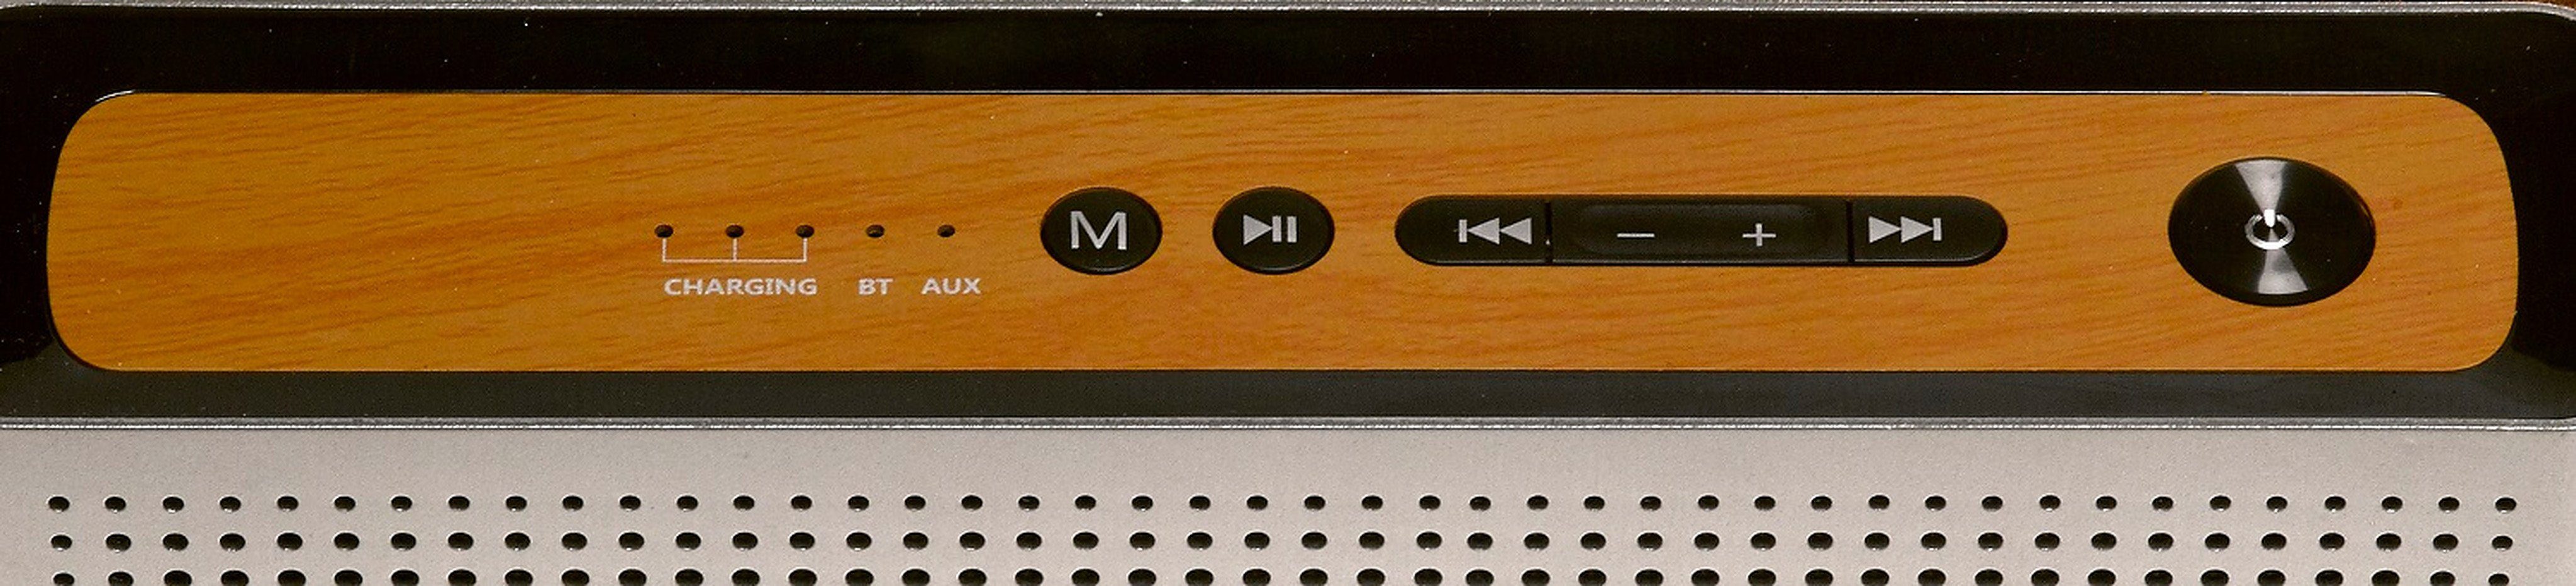 Denver BTS-200MK2 silberfarben Bluetooth W) Lautsprecher 10 Bluetooth-Lautsprecher (Bluetooth